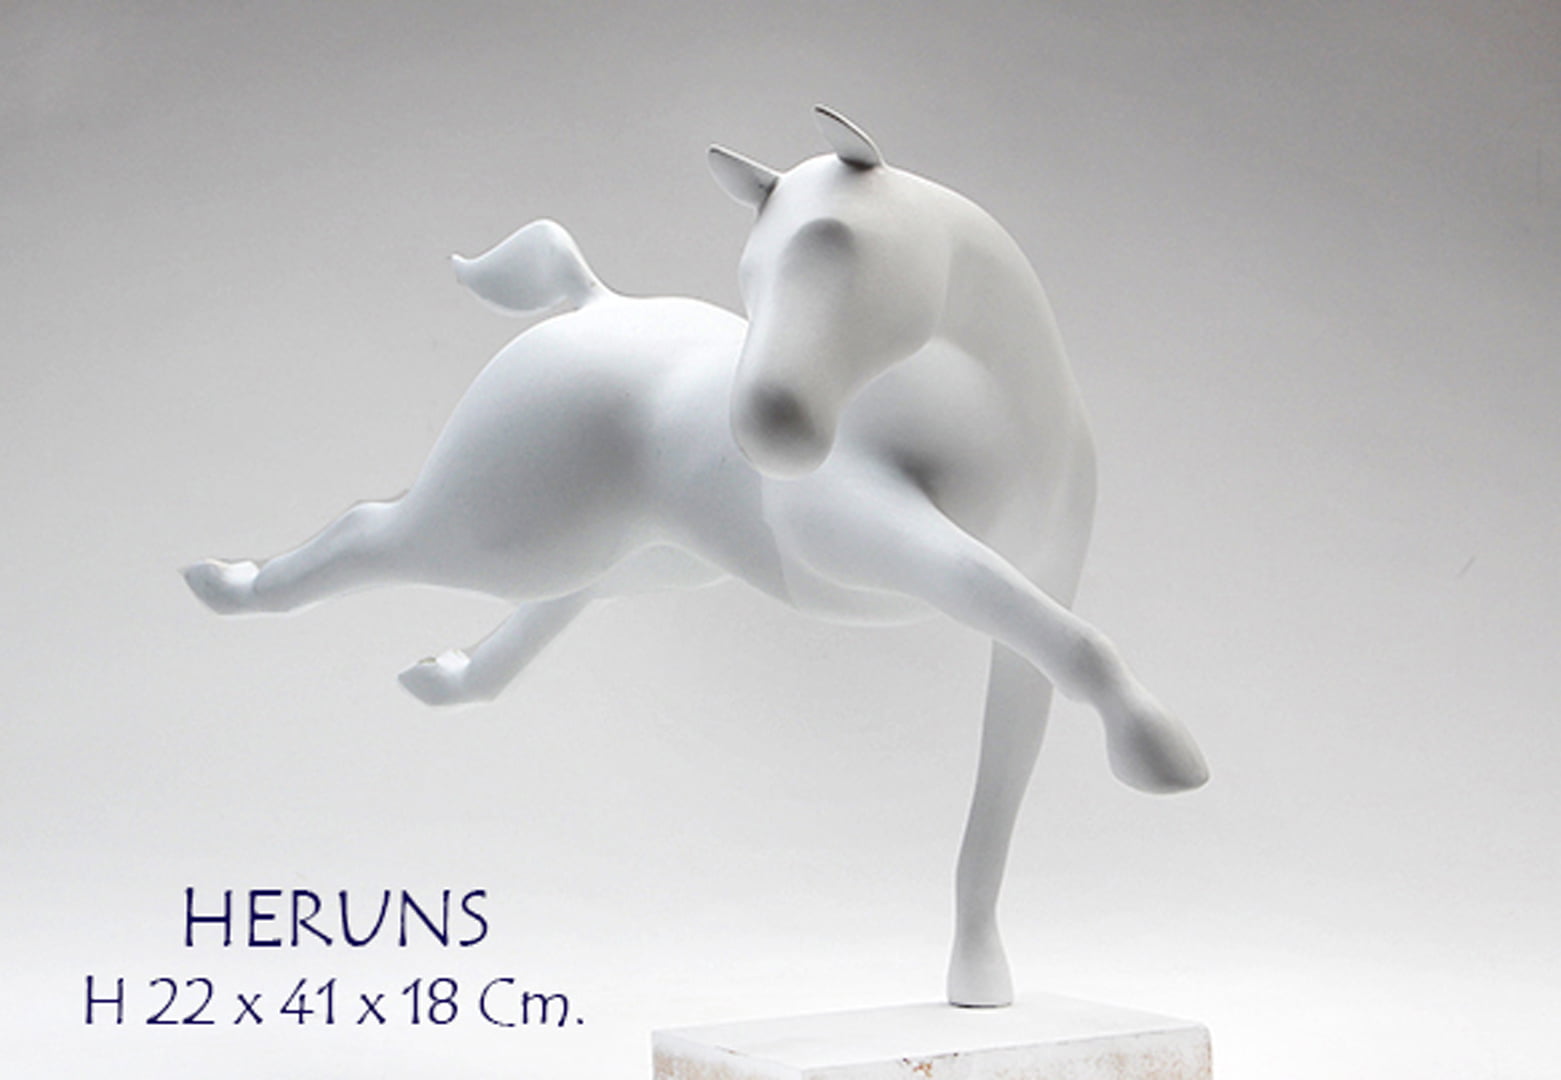 Heruns - Sculptures - Bernard Rives